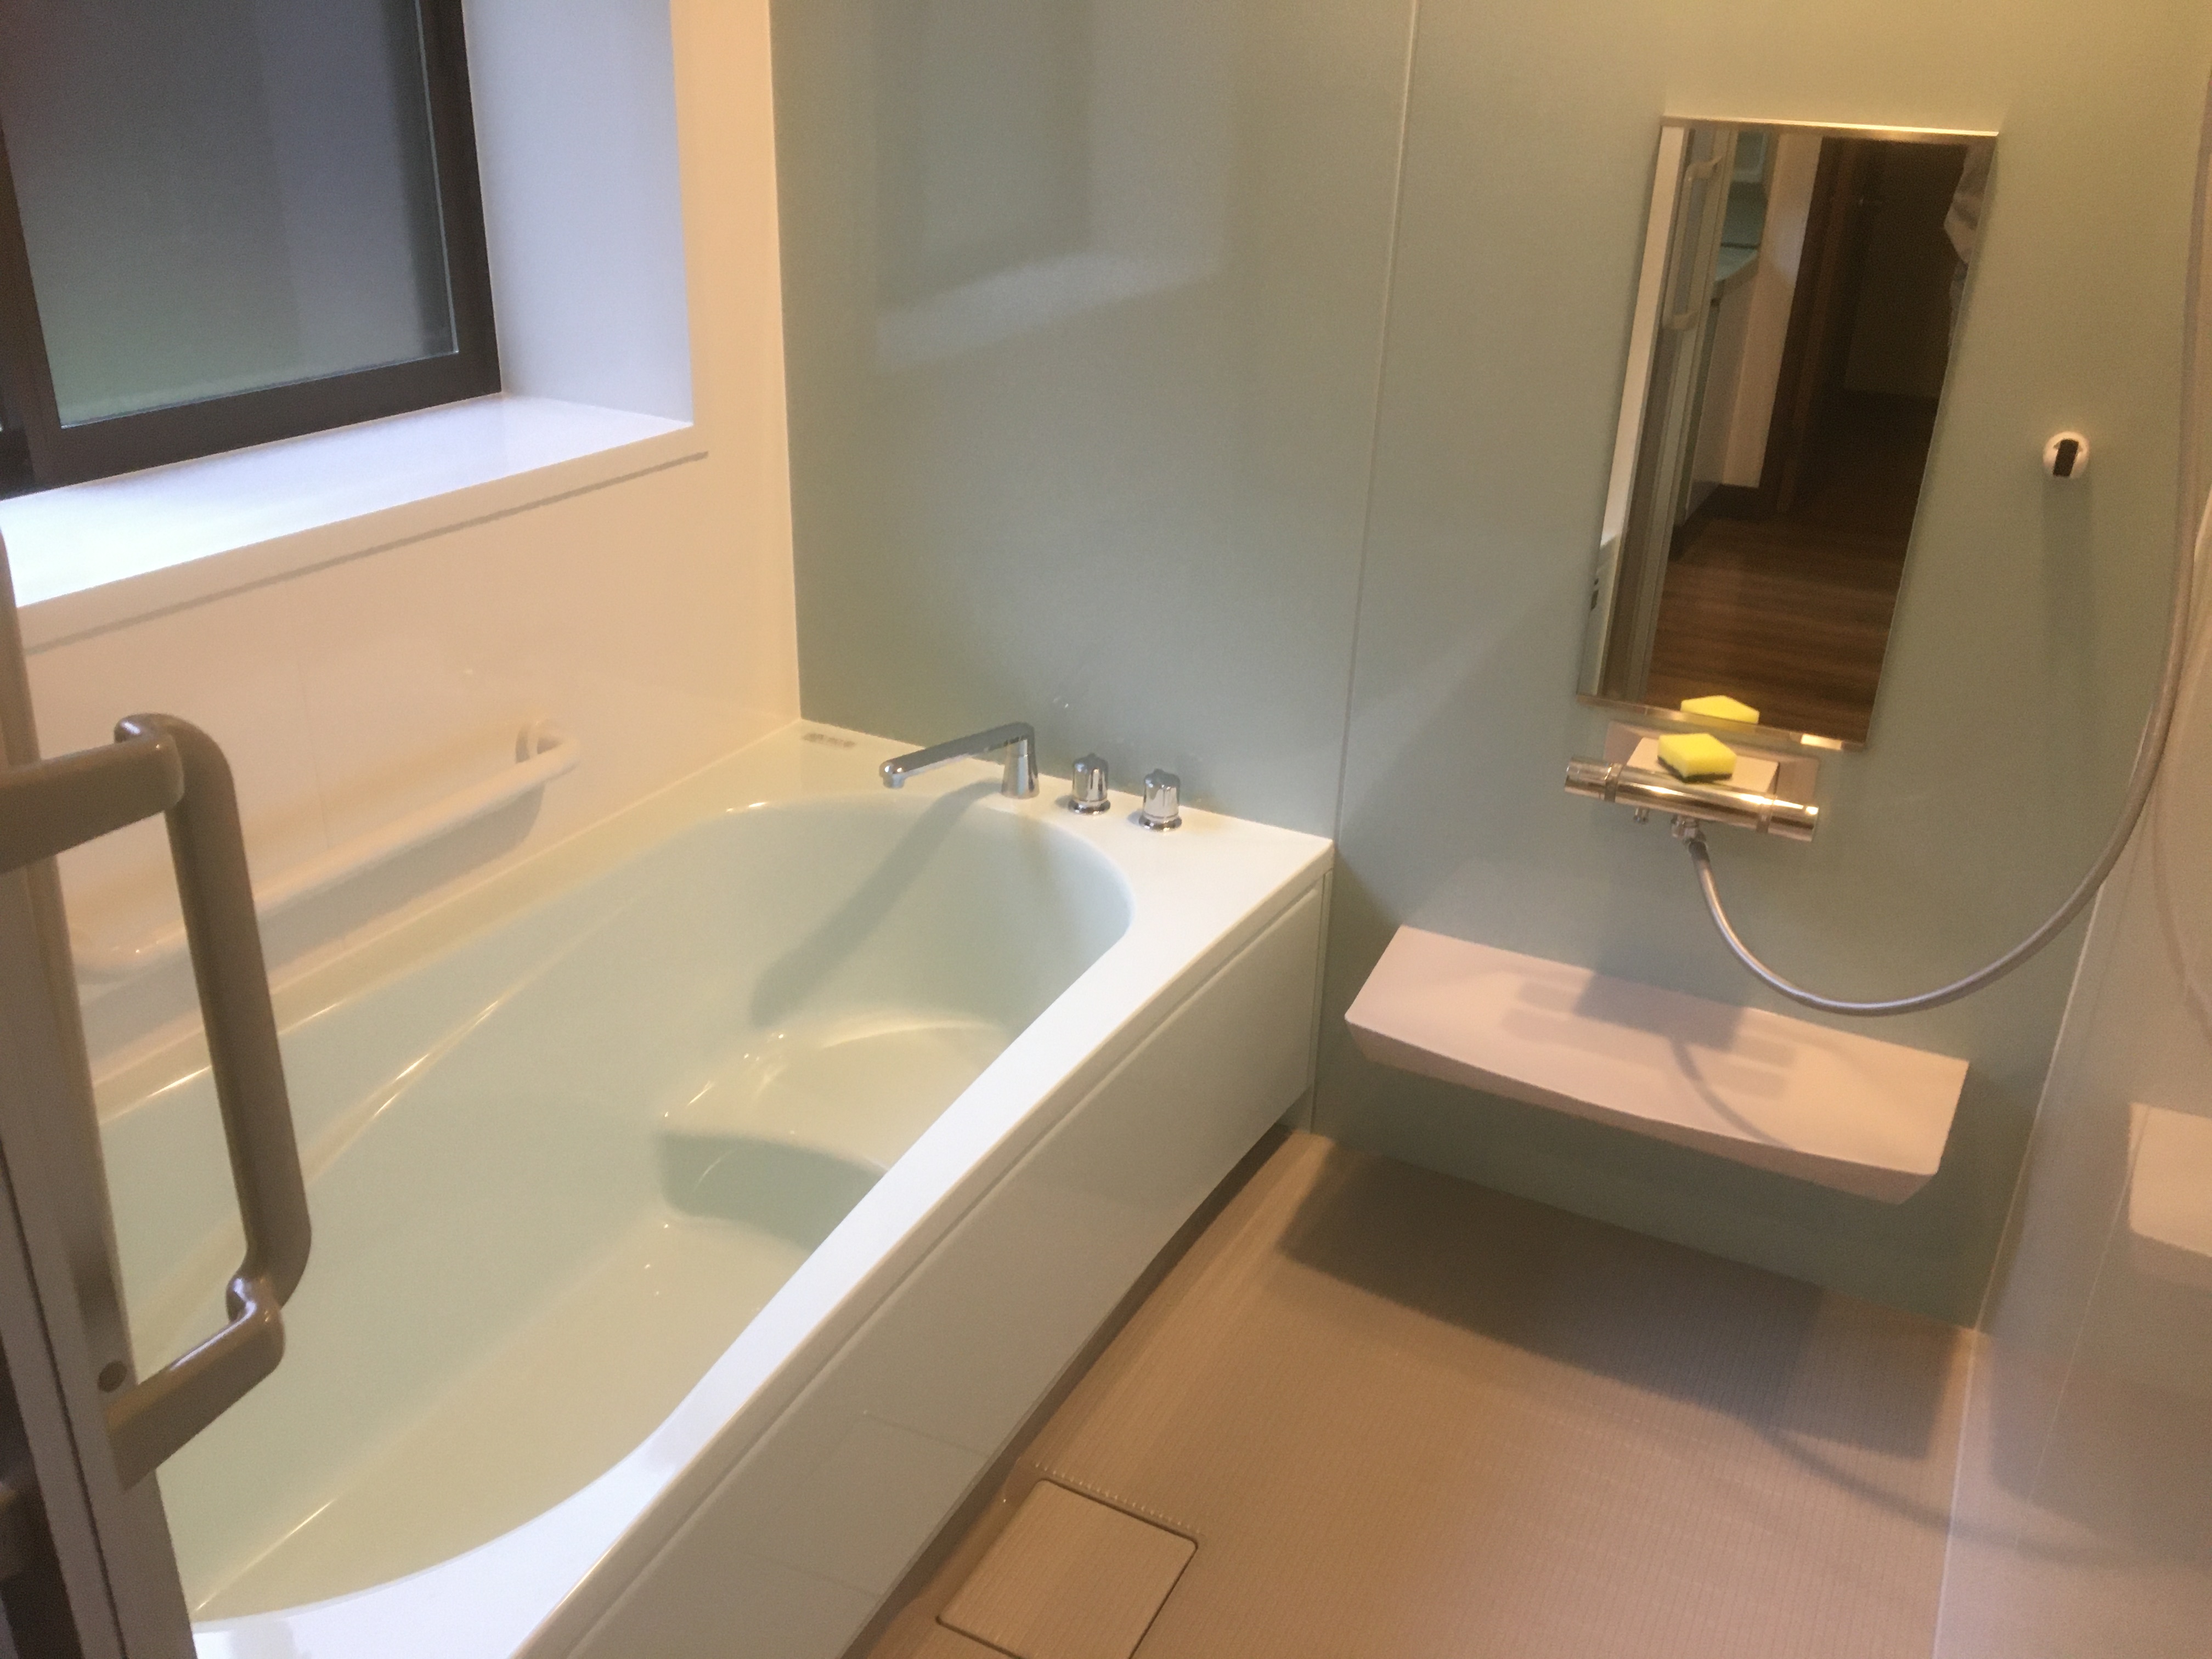 村上市岩石K様邸浴室改修工事2020/1月完成